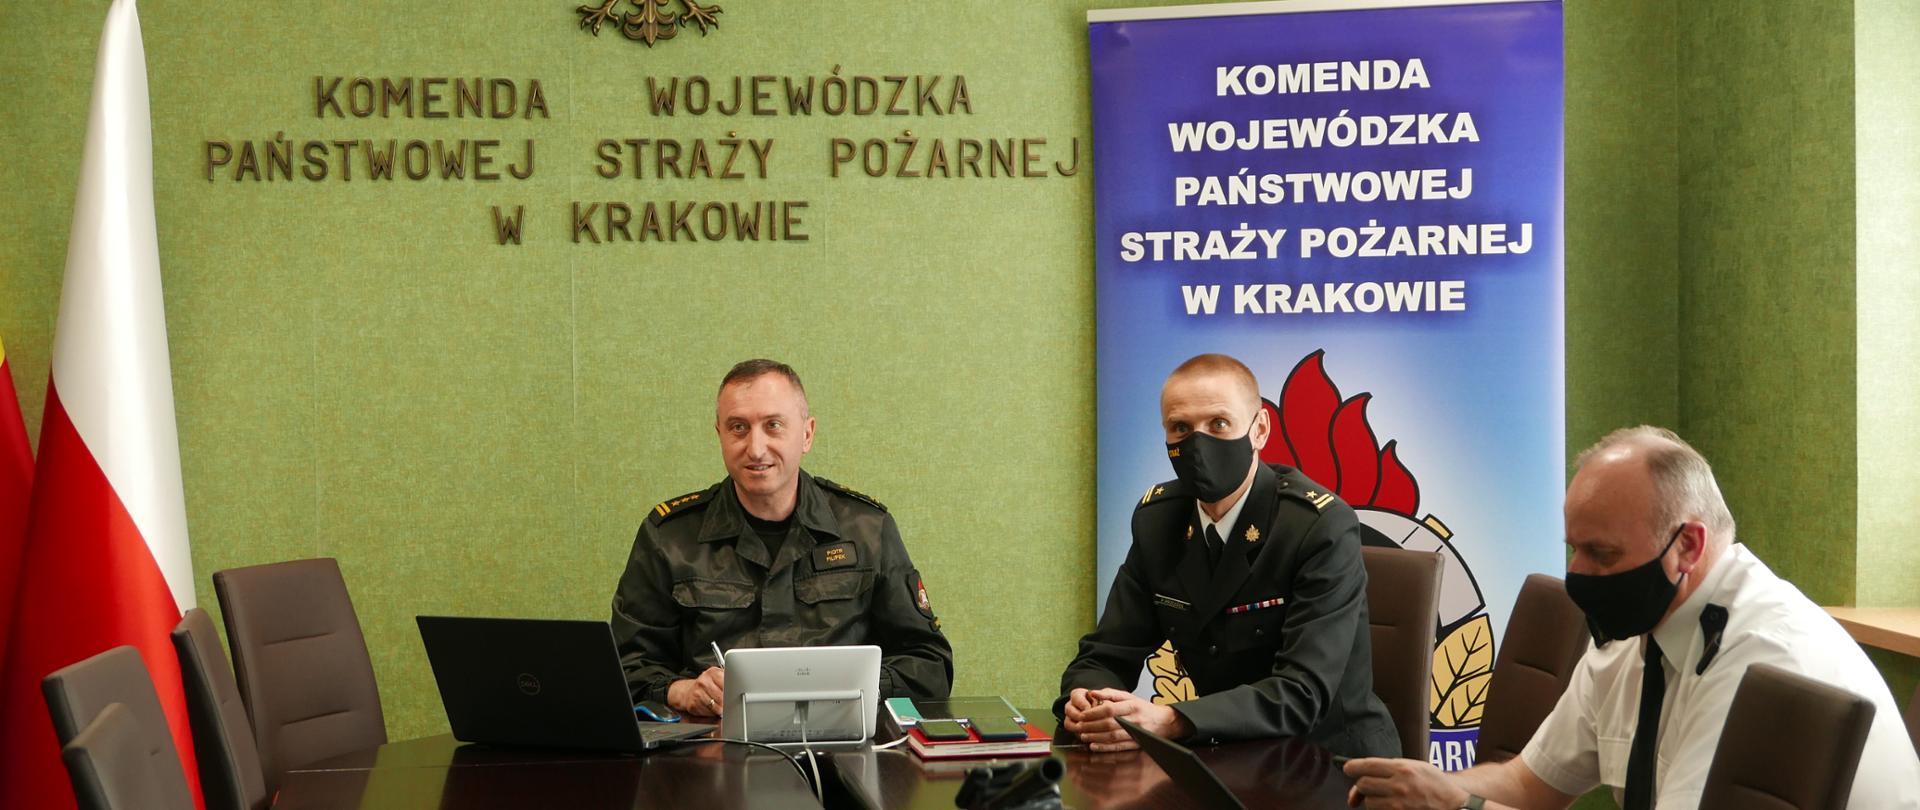 Komendant Wojewódzki PSP wraz z Zastępcą i Komendantem Miejskim PSP w trakcie trwania wideokonferencji. Po prawej stronie baner Komendy Wojewódzkiej, po lewej flagi.